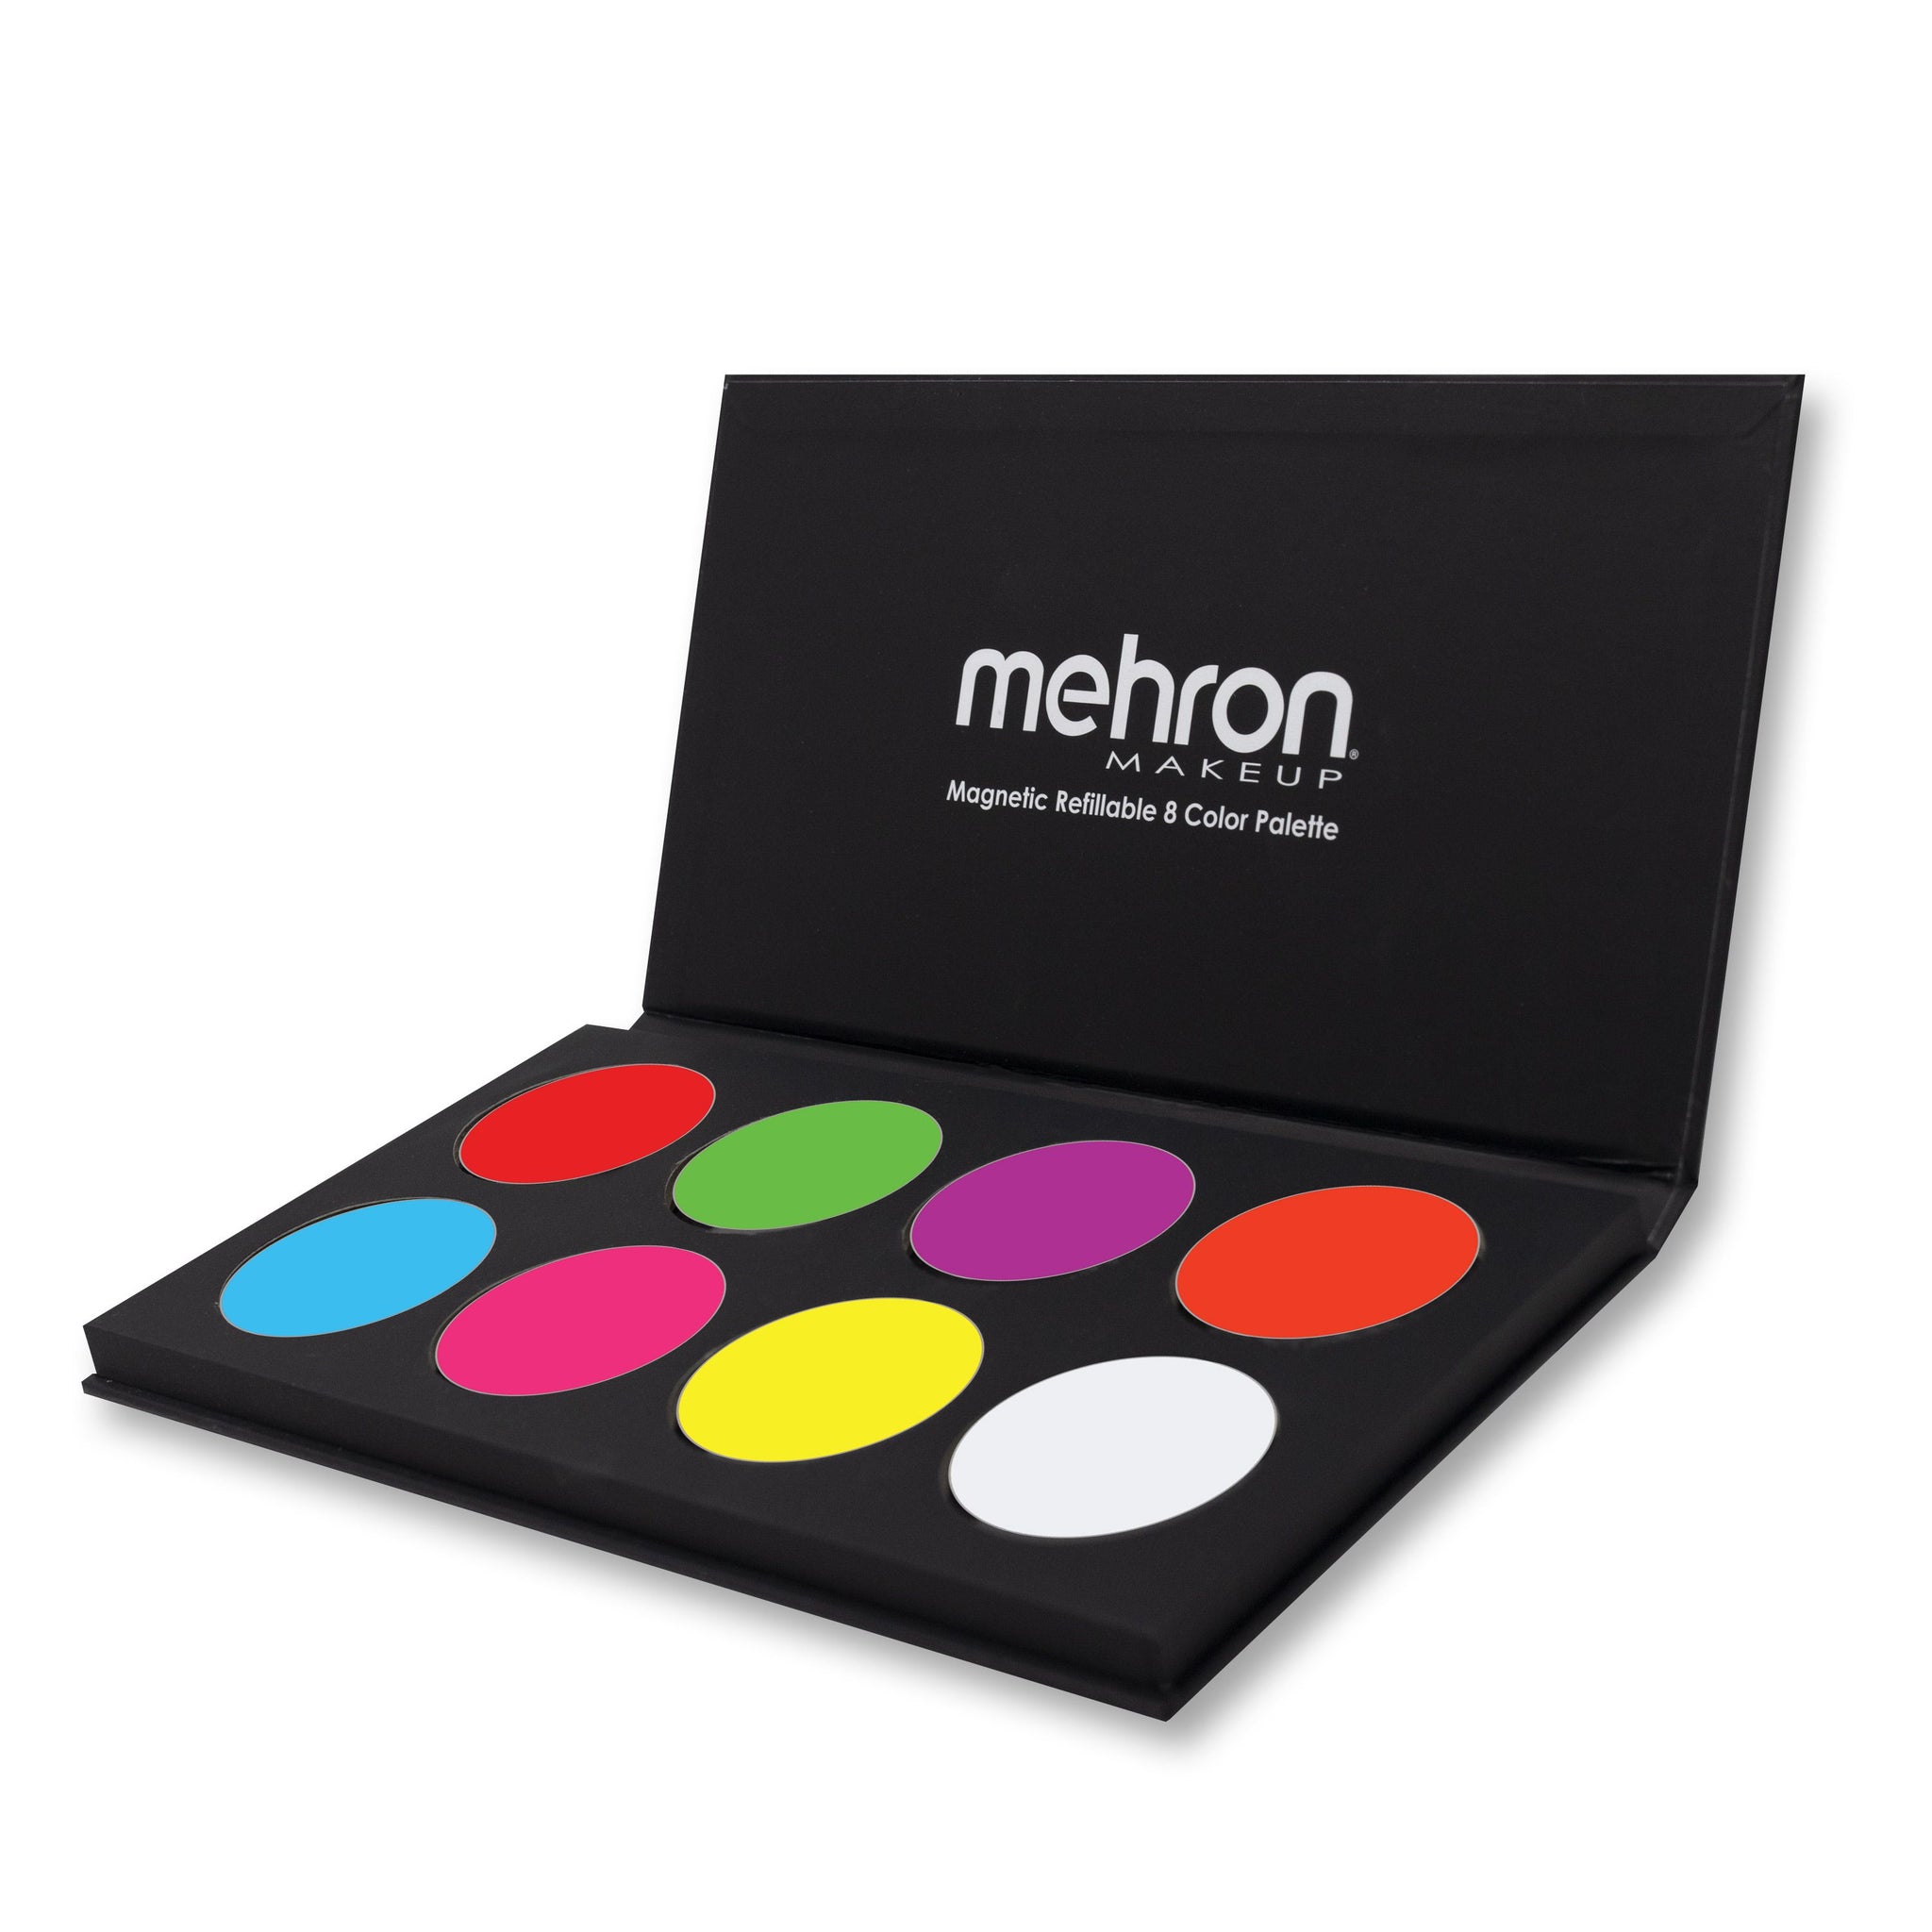 Mehron Makeup Paradise Makeup AQ 8 Color Tropical Palette | Magnetic  Refillable Body Paint & Face Paint Palette | Professional Water Activated  Makeup